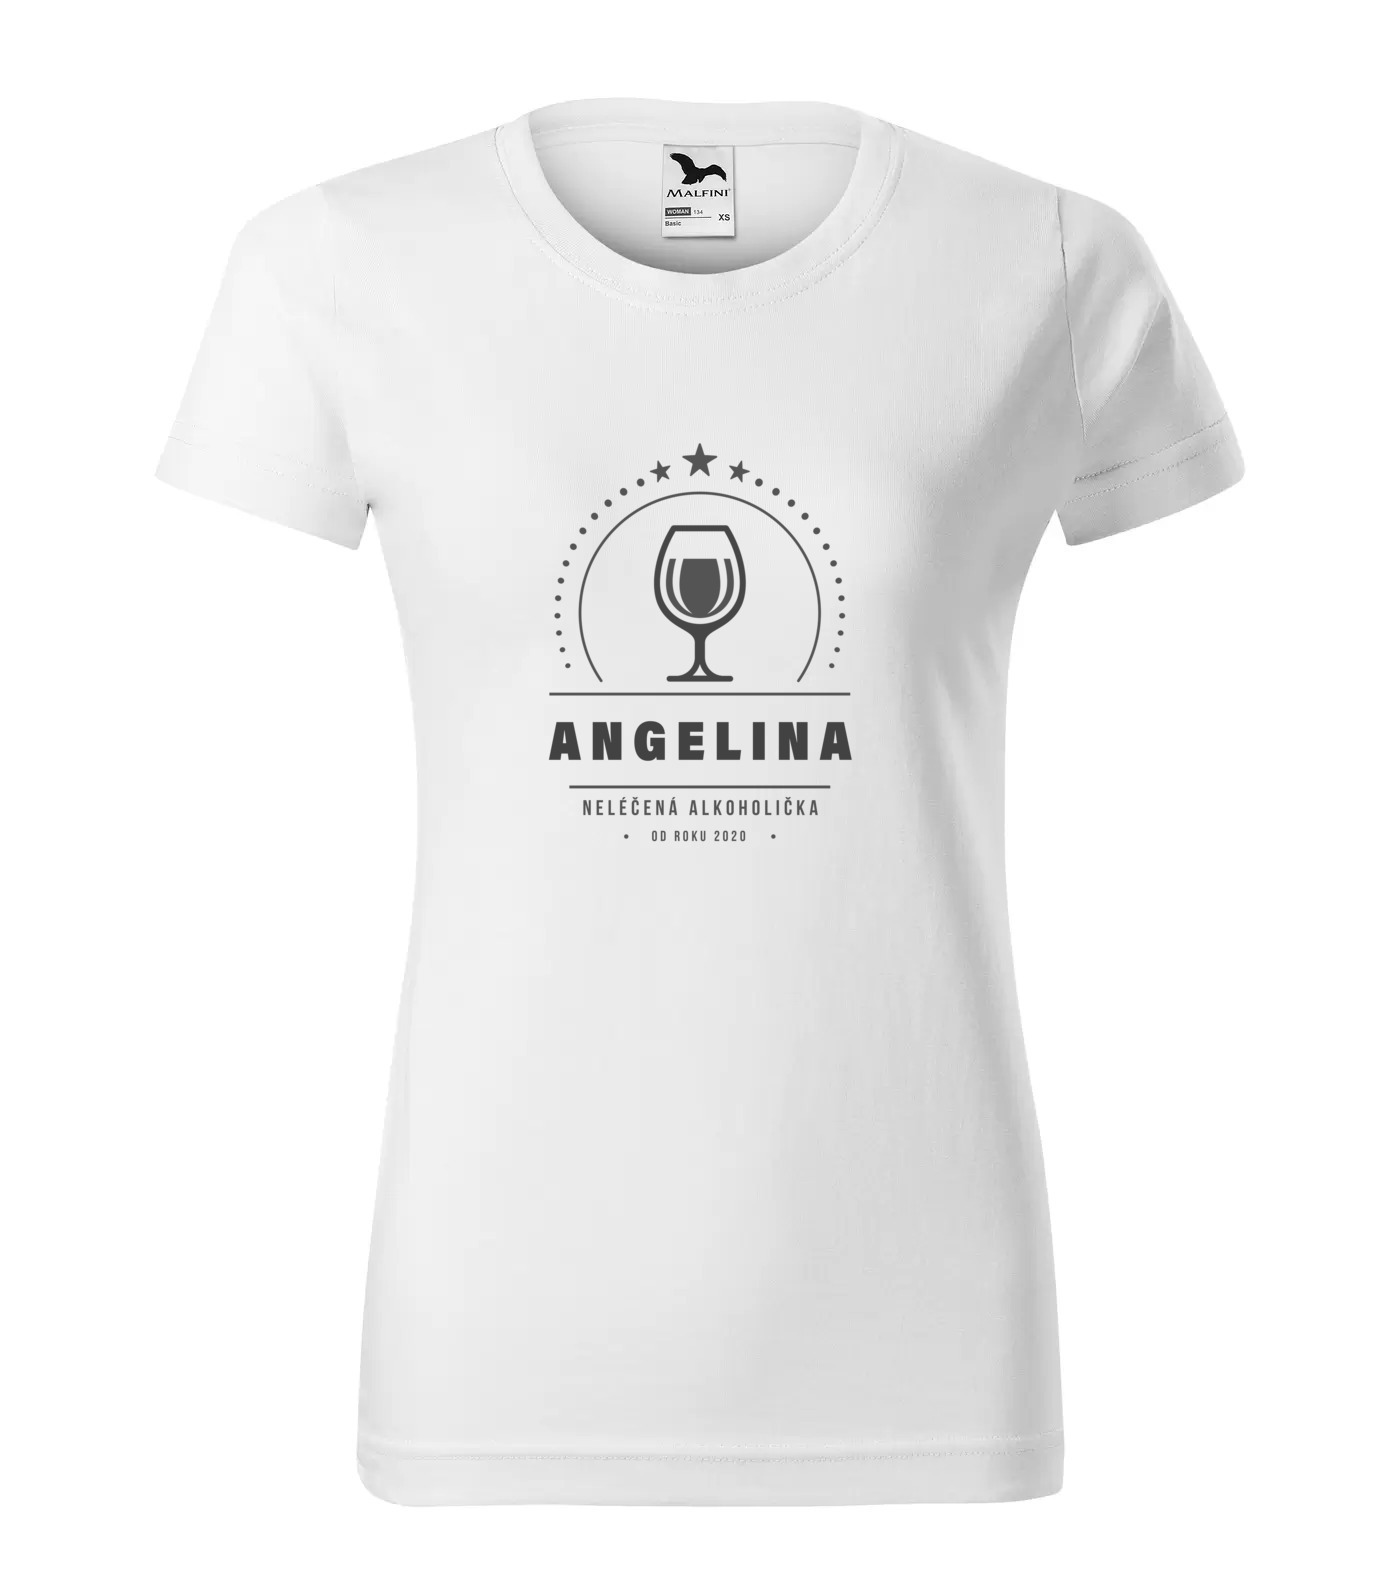 Tričko Alkoholička Angelina